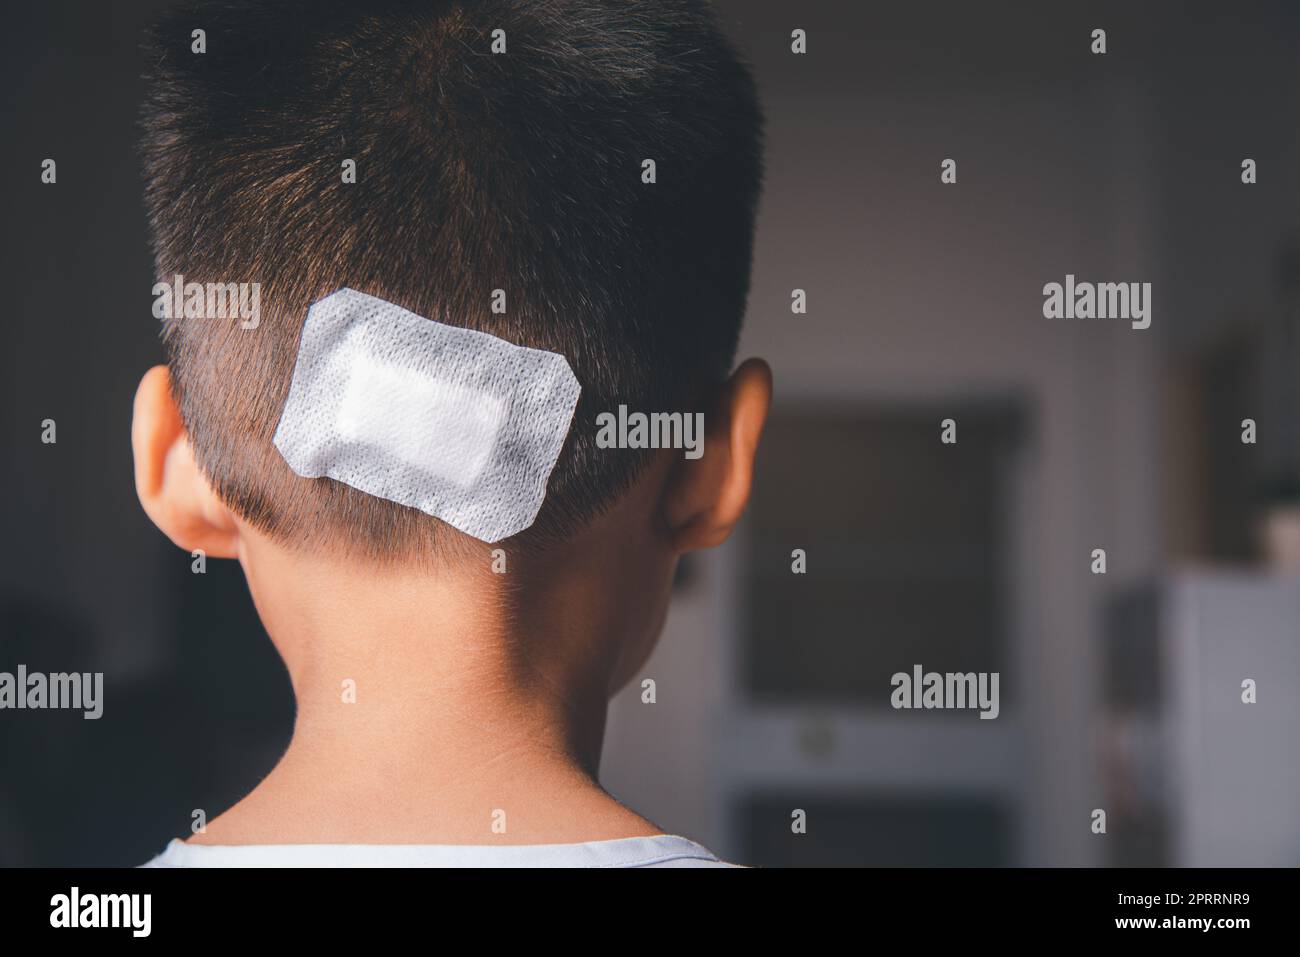 La ferita di sutura lacerata della testa posteriore del capretto che sutura con trauma la testa da bendaggio medico Foto Stock